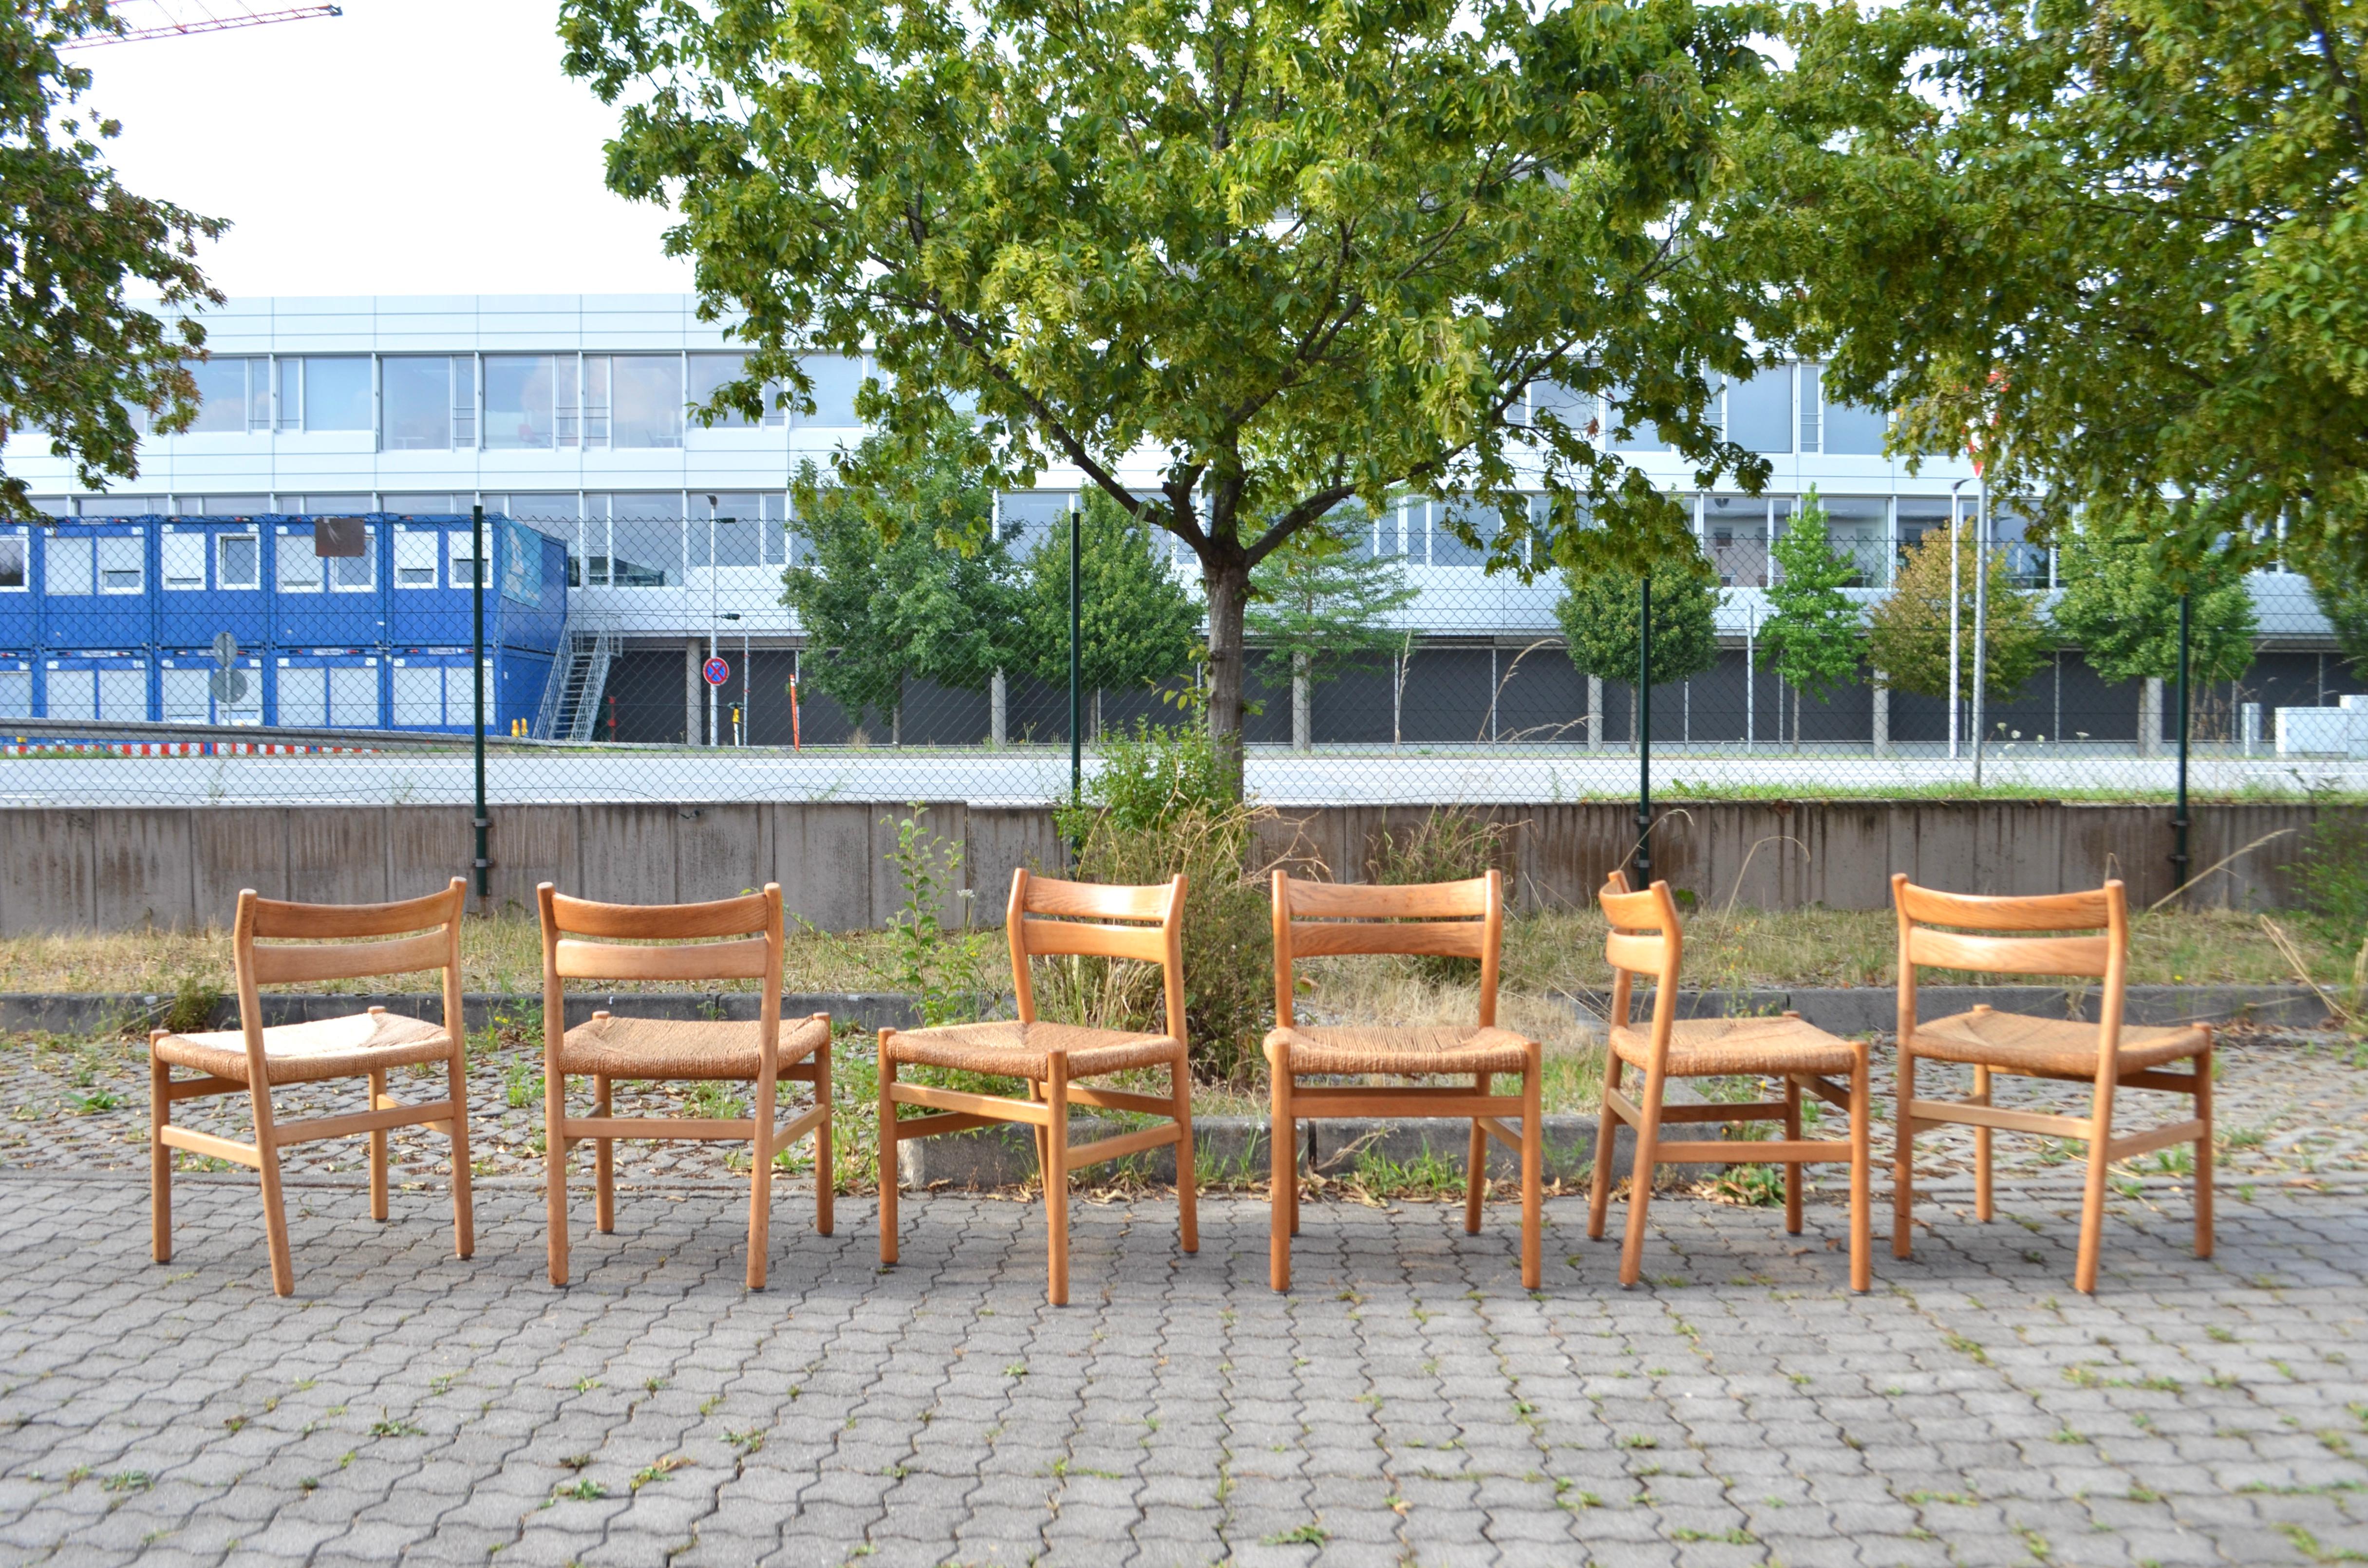 Dieser Satz von 6 Stühlen Modell BM1.
Es wurde entworfen  1958 von Børge Mogensen und produziert von C.M.Madssn Fabriken.
Diese Stühle sind alt und stammen aus der ersten Produktion.
Das Design wurde von den amerikanischen Shaker-Möbeln inspiriert.